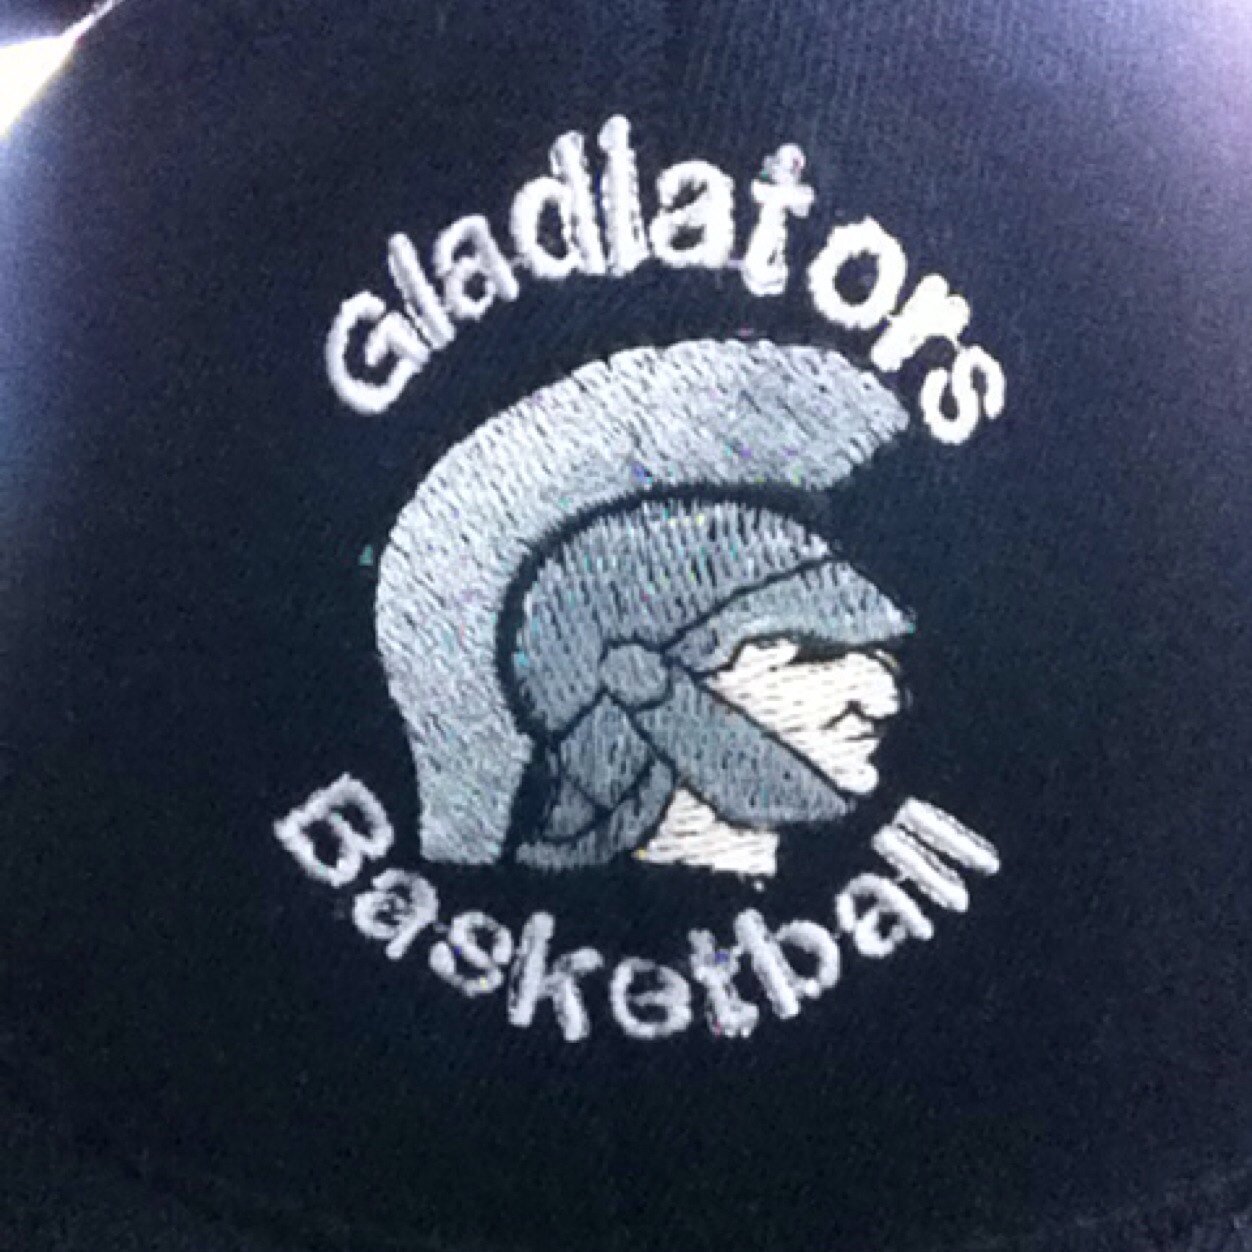 Gladiatorsbball Profile Picture